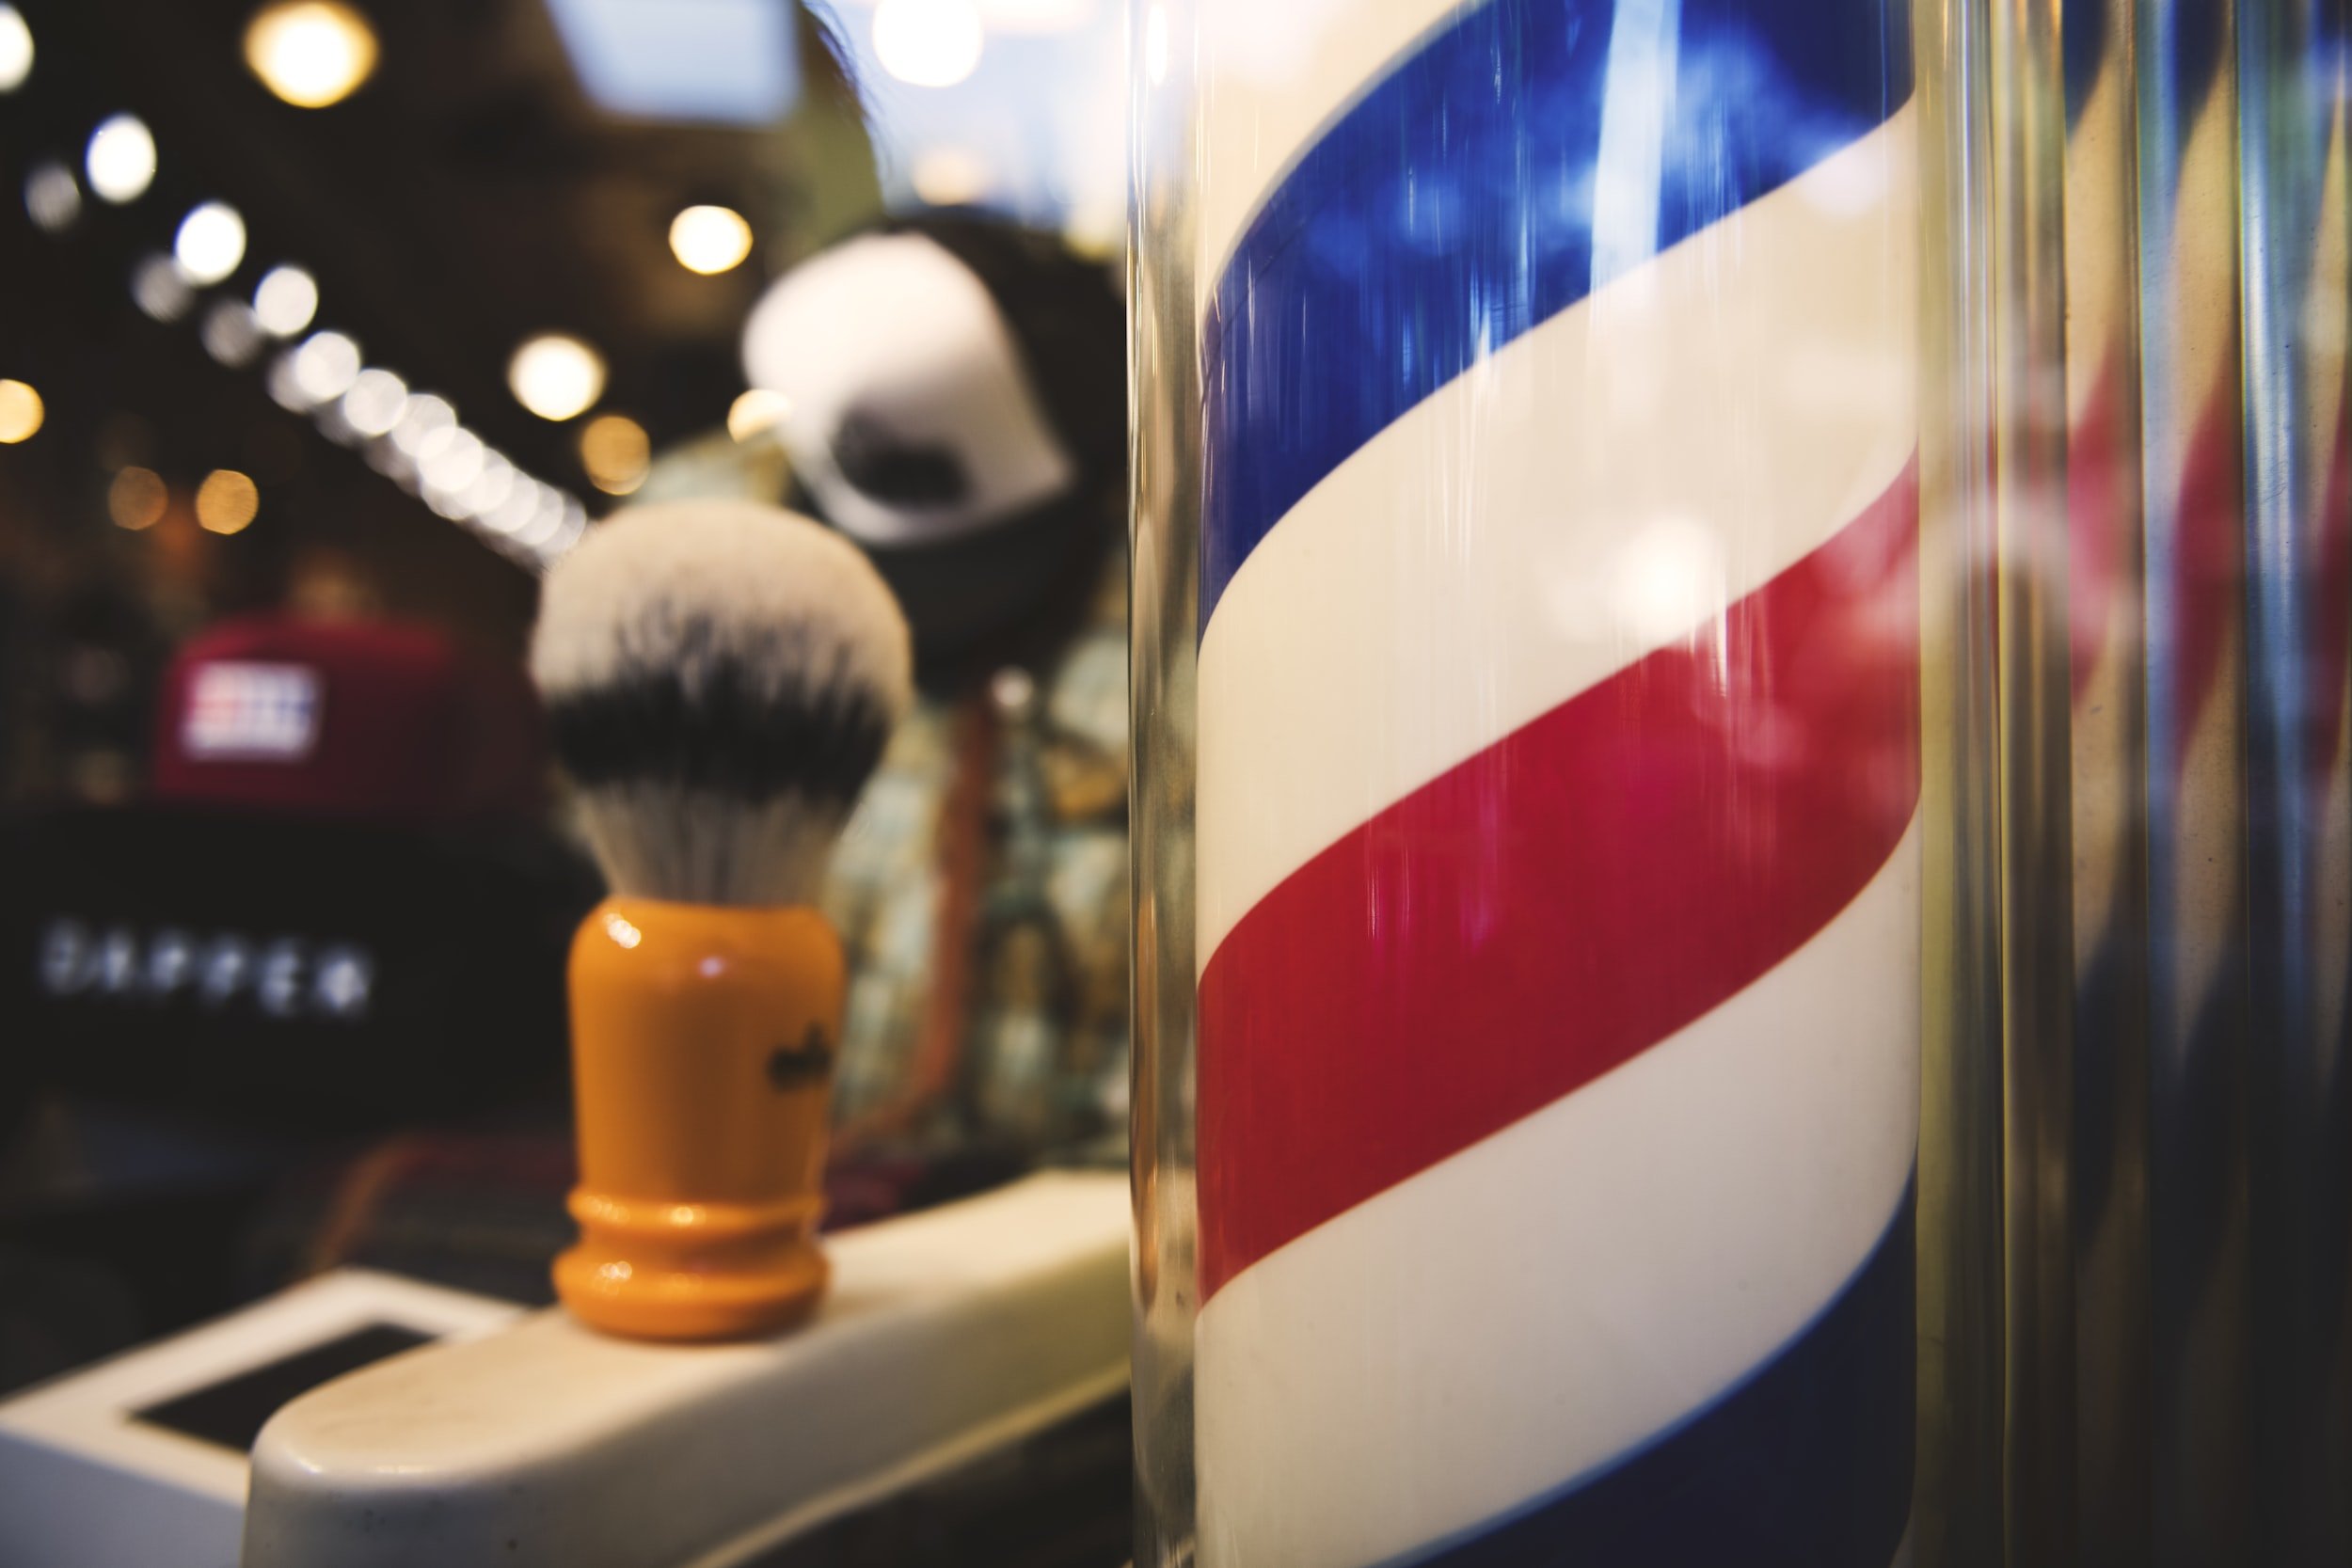 American Barbershop